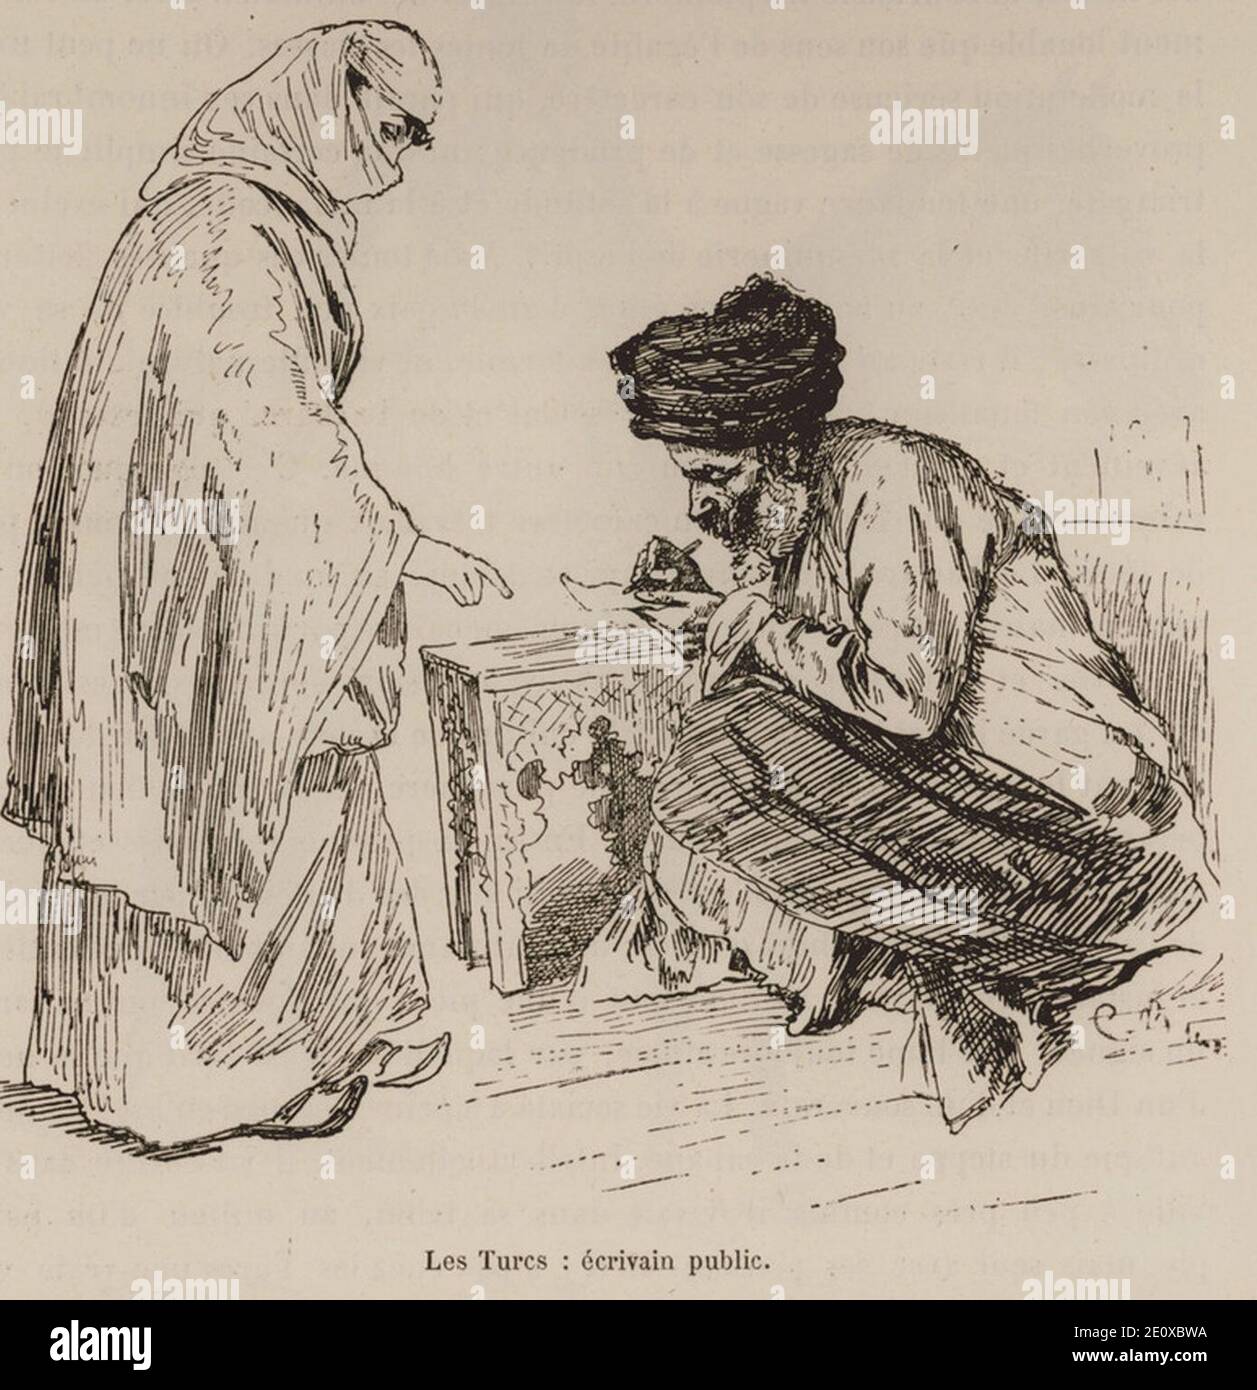 Les Turcs- écrivain public - De Amicis Edmondo - 1883. Stock Photo